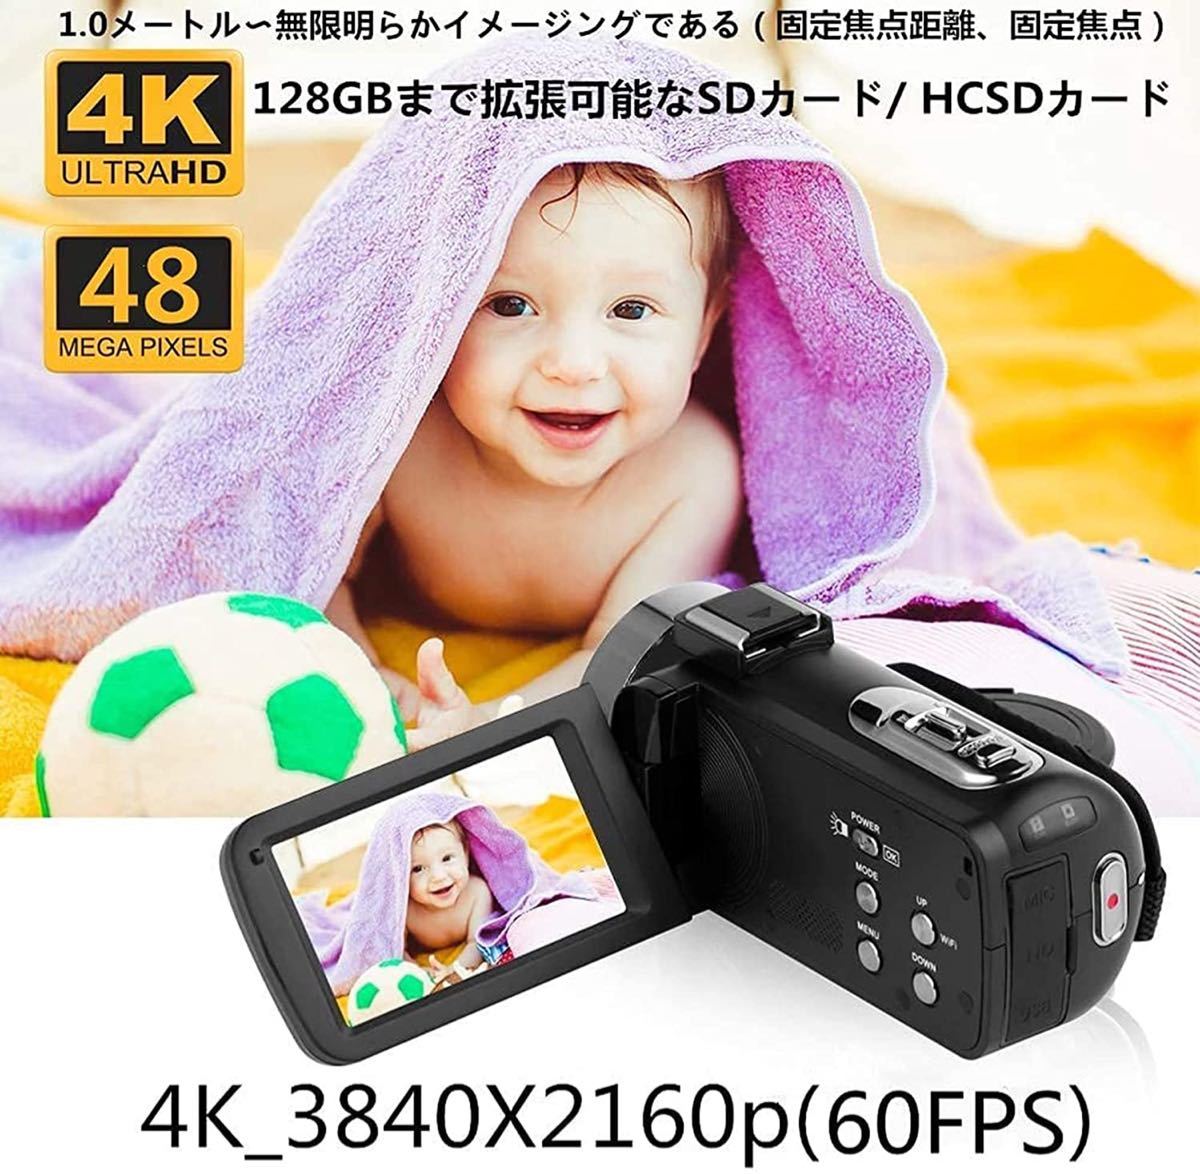 ビデオカメラ 4K YouTubeカメラWIFI機能4800万画素#886 | amic.radog.md